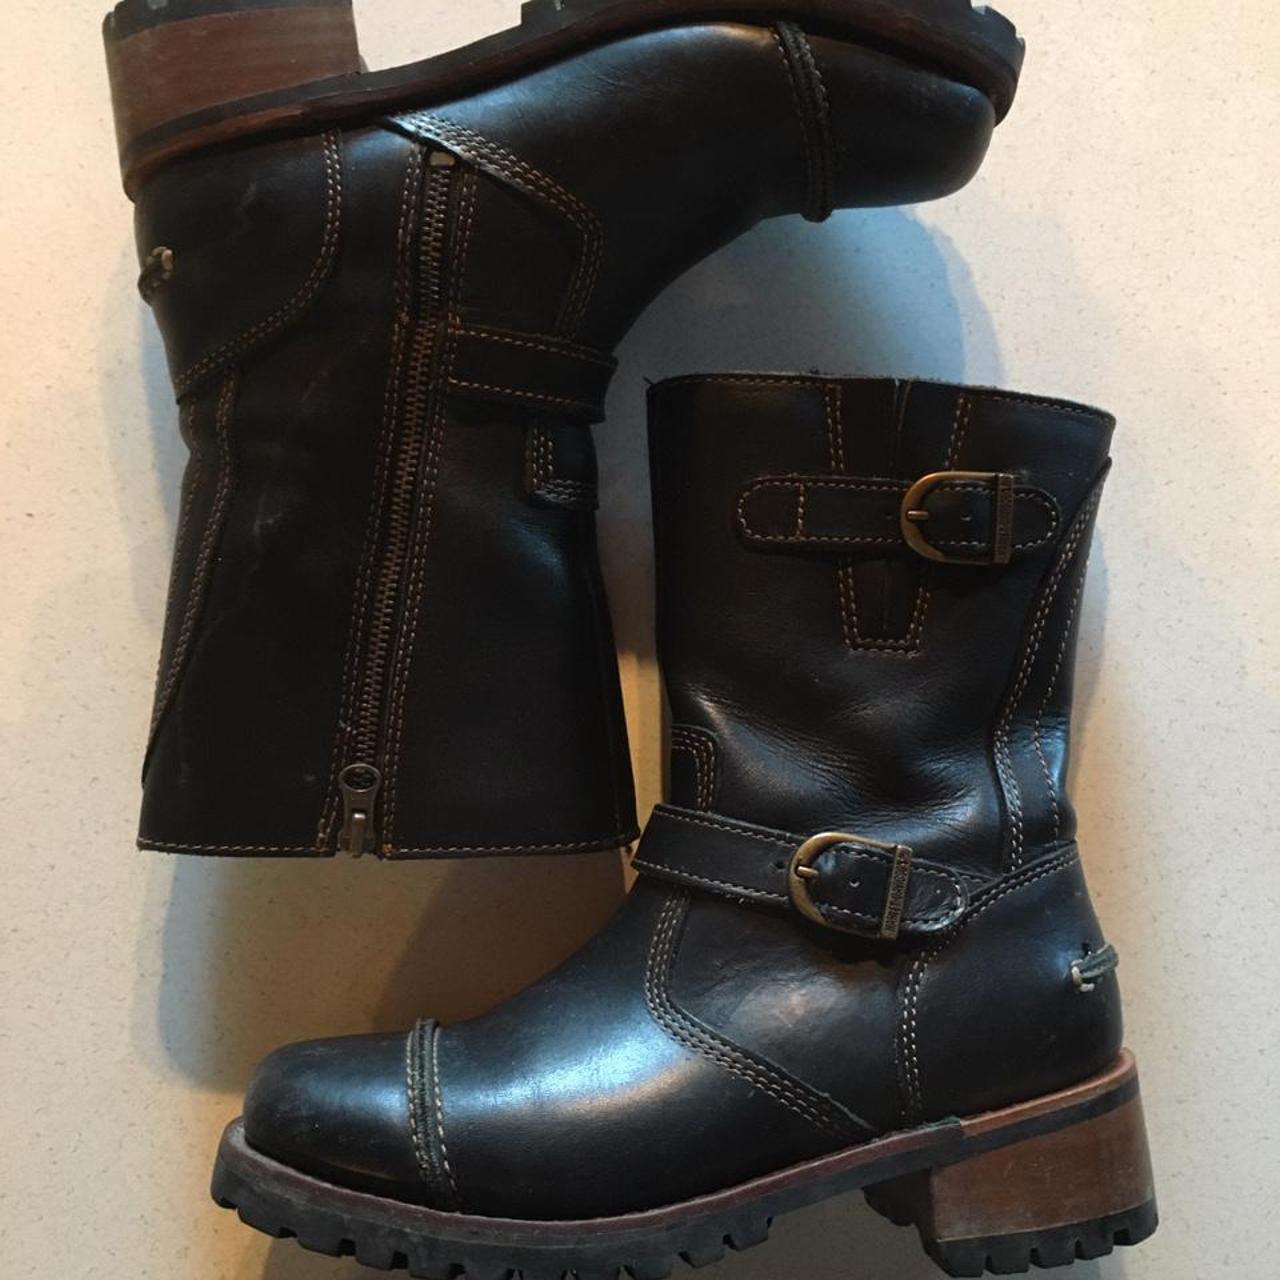 Genuine leather harley davidson boots. wooden... - Depop